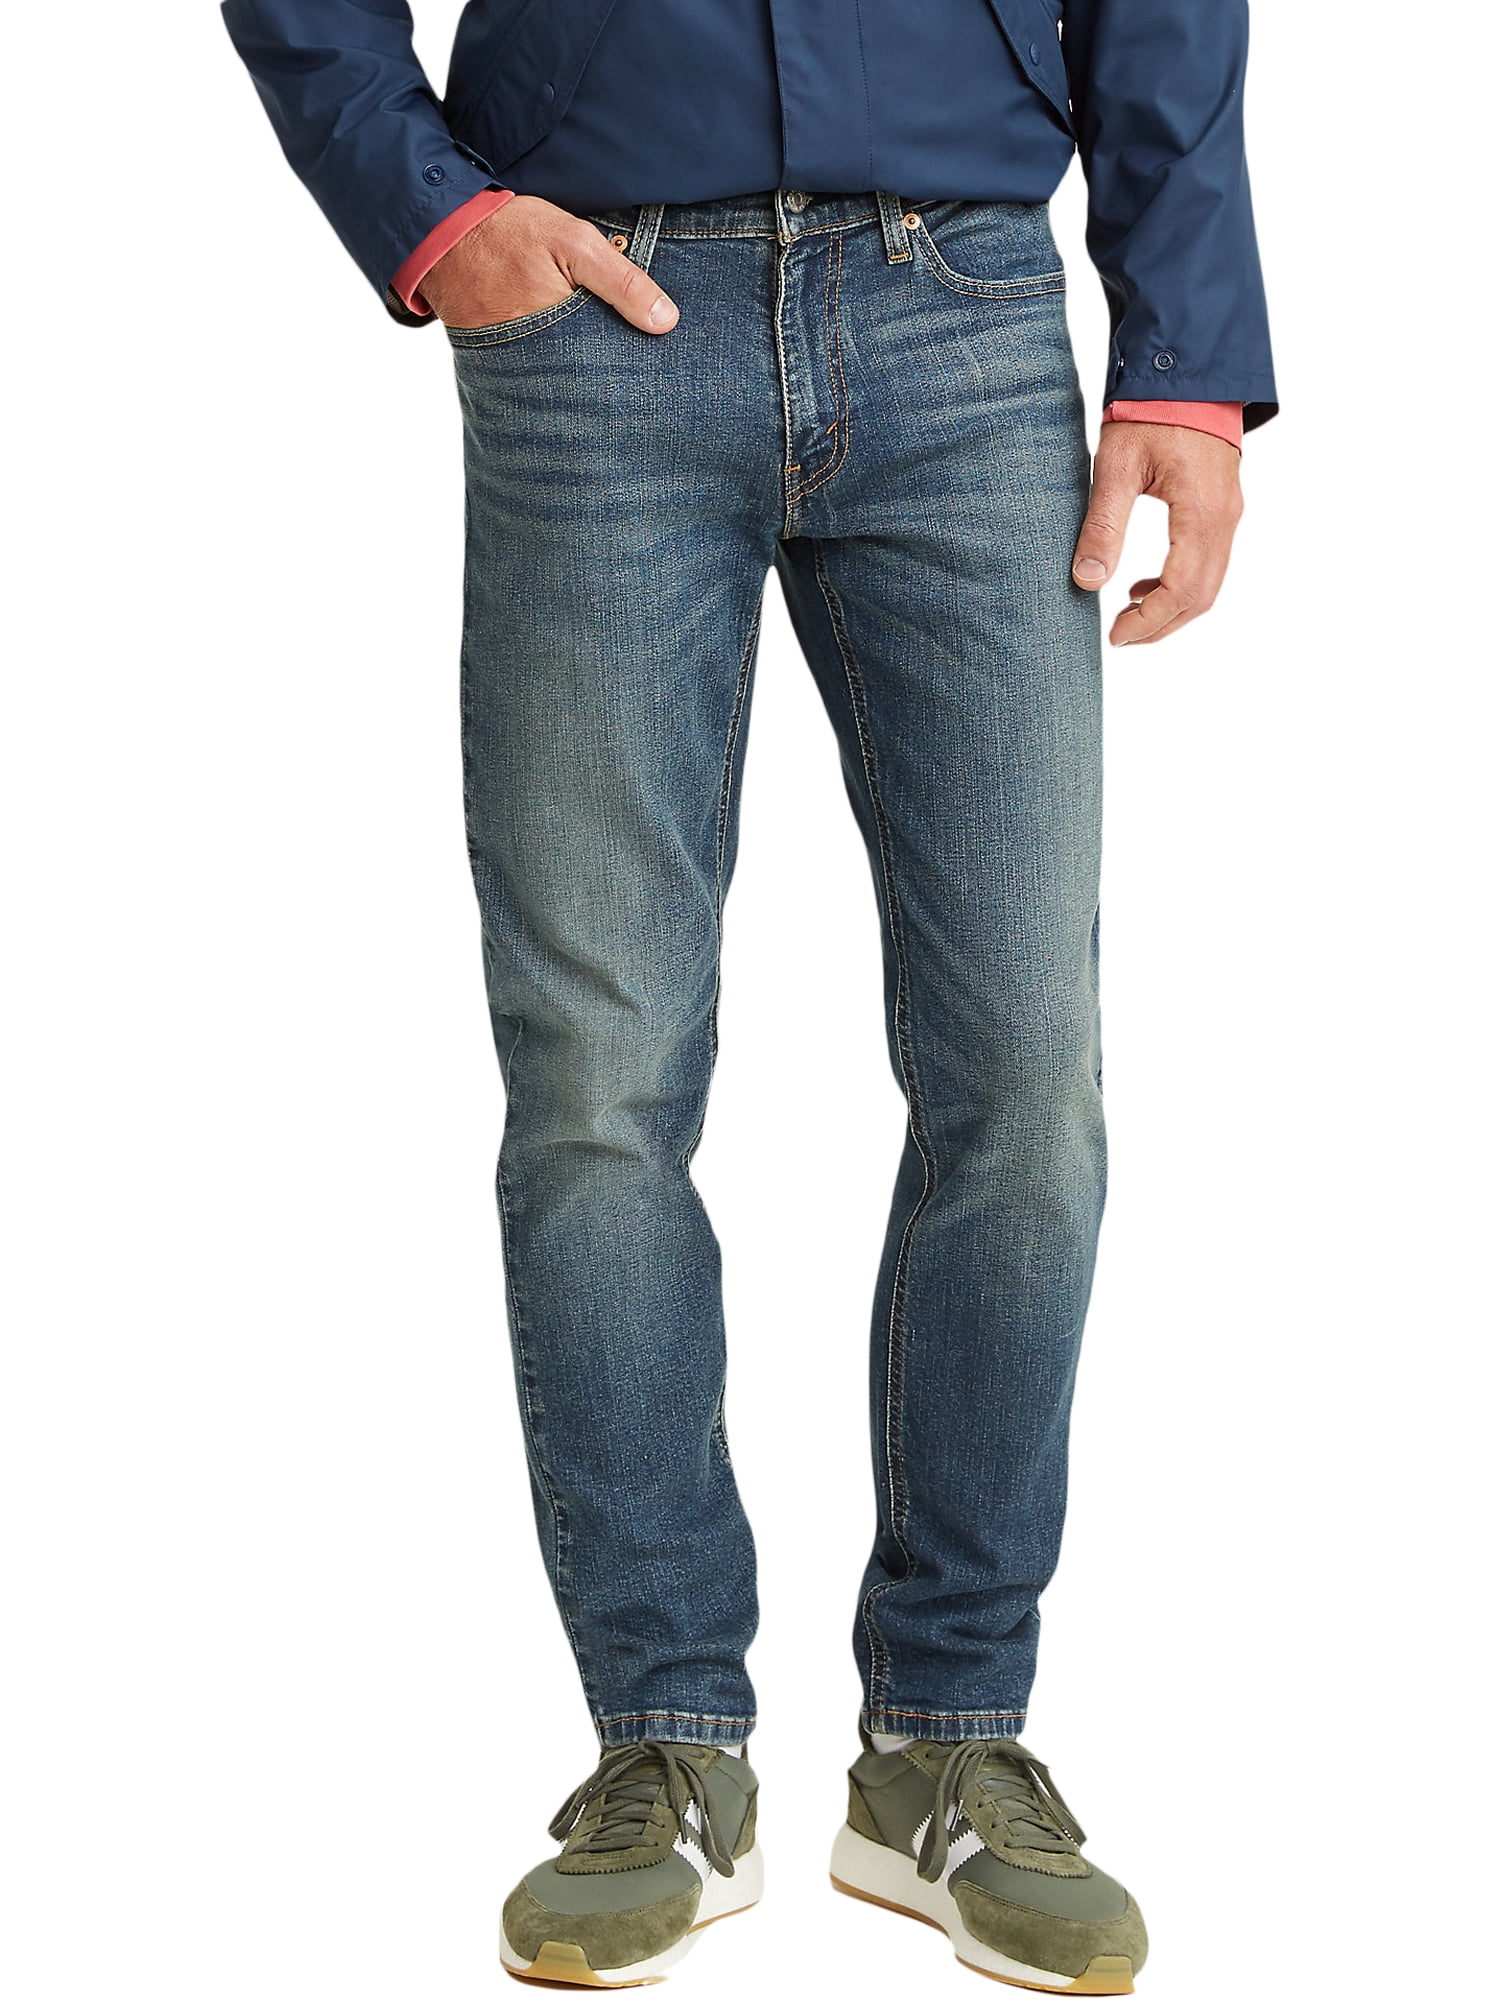 Actualizar 44+ imagen levi’s 531 mens jeans